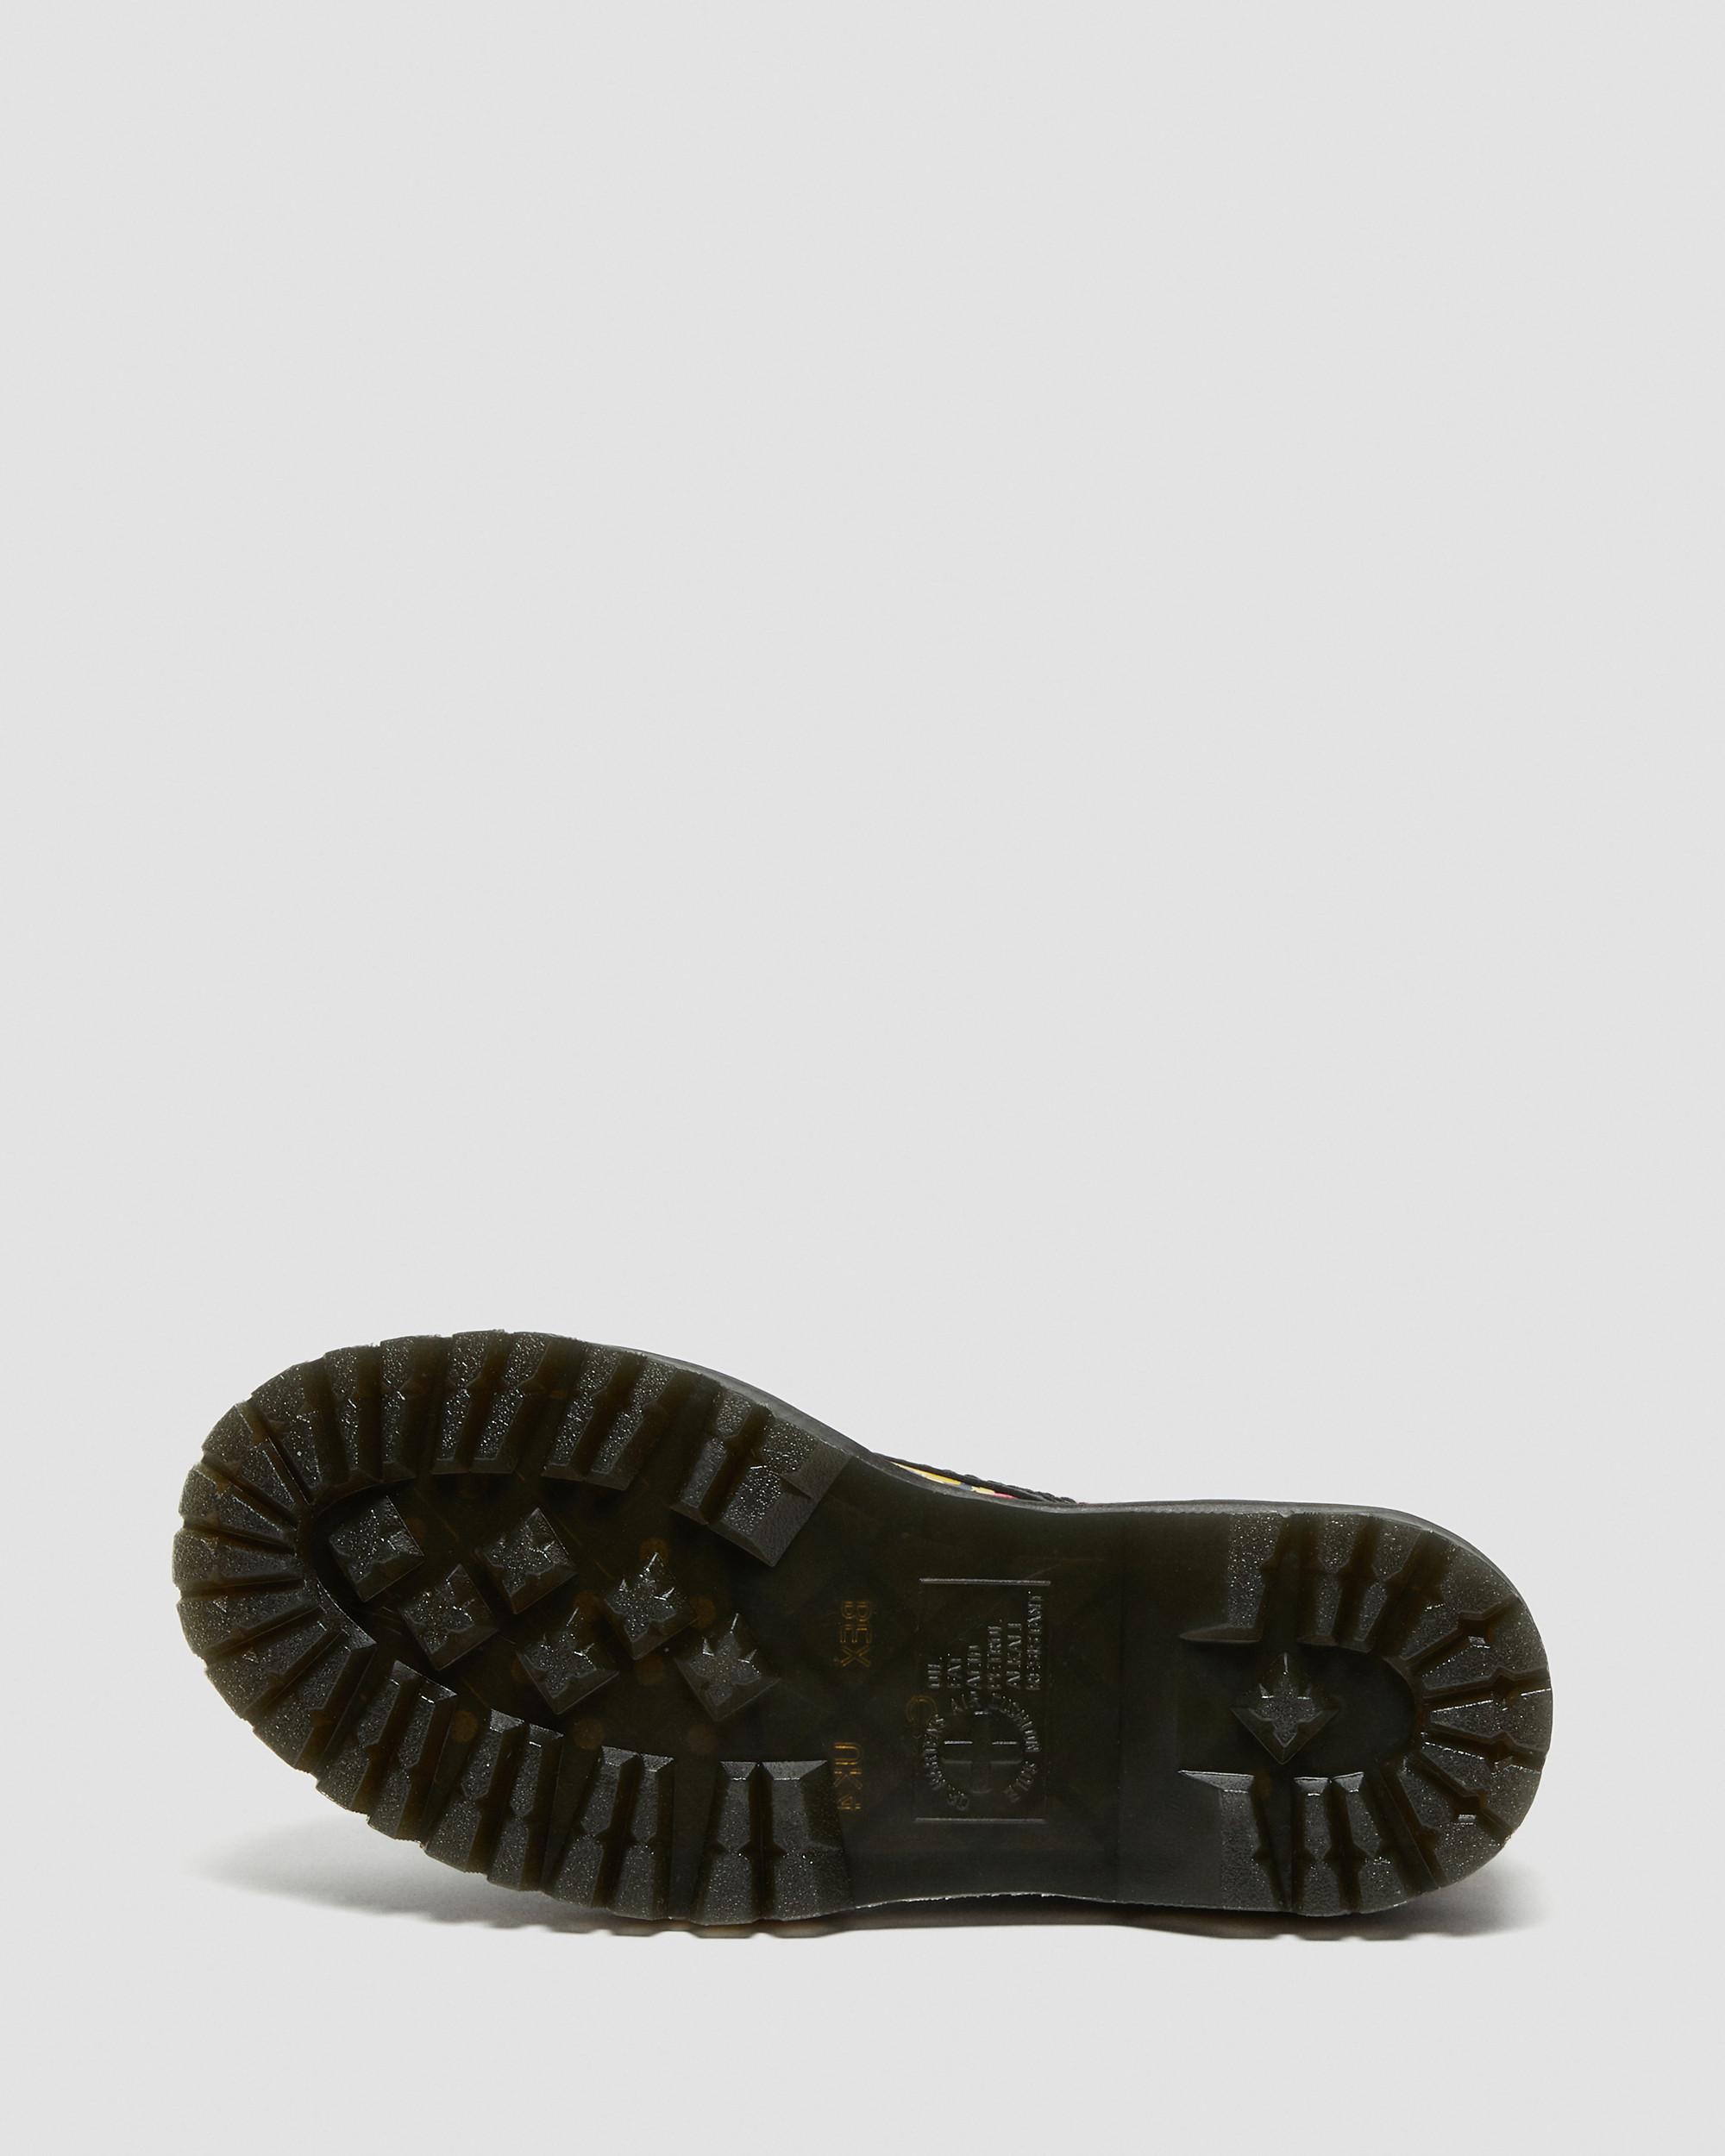 Platform Black Dr. Martens Leather | Boots Mash Up in Floral Sinclair